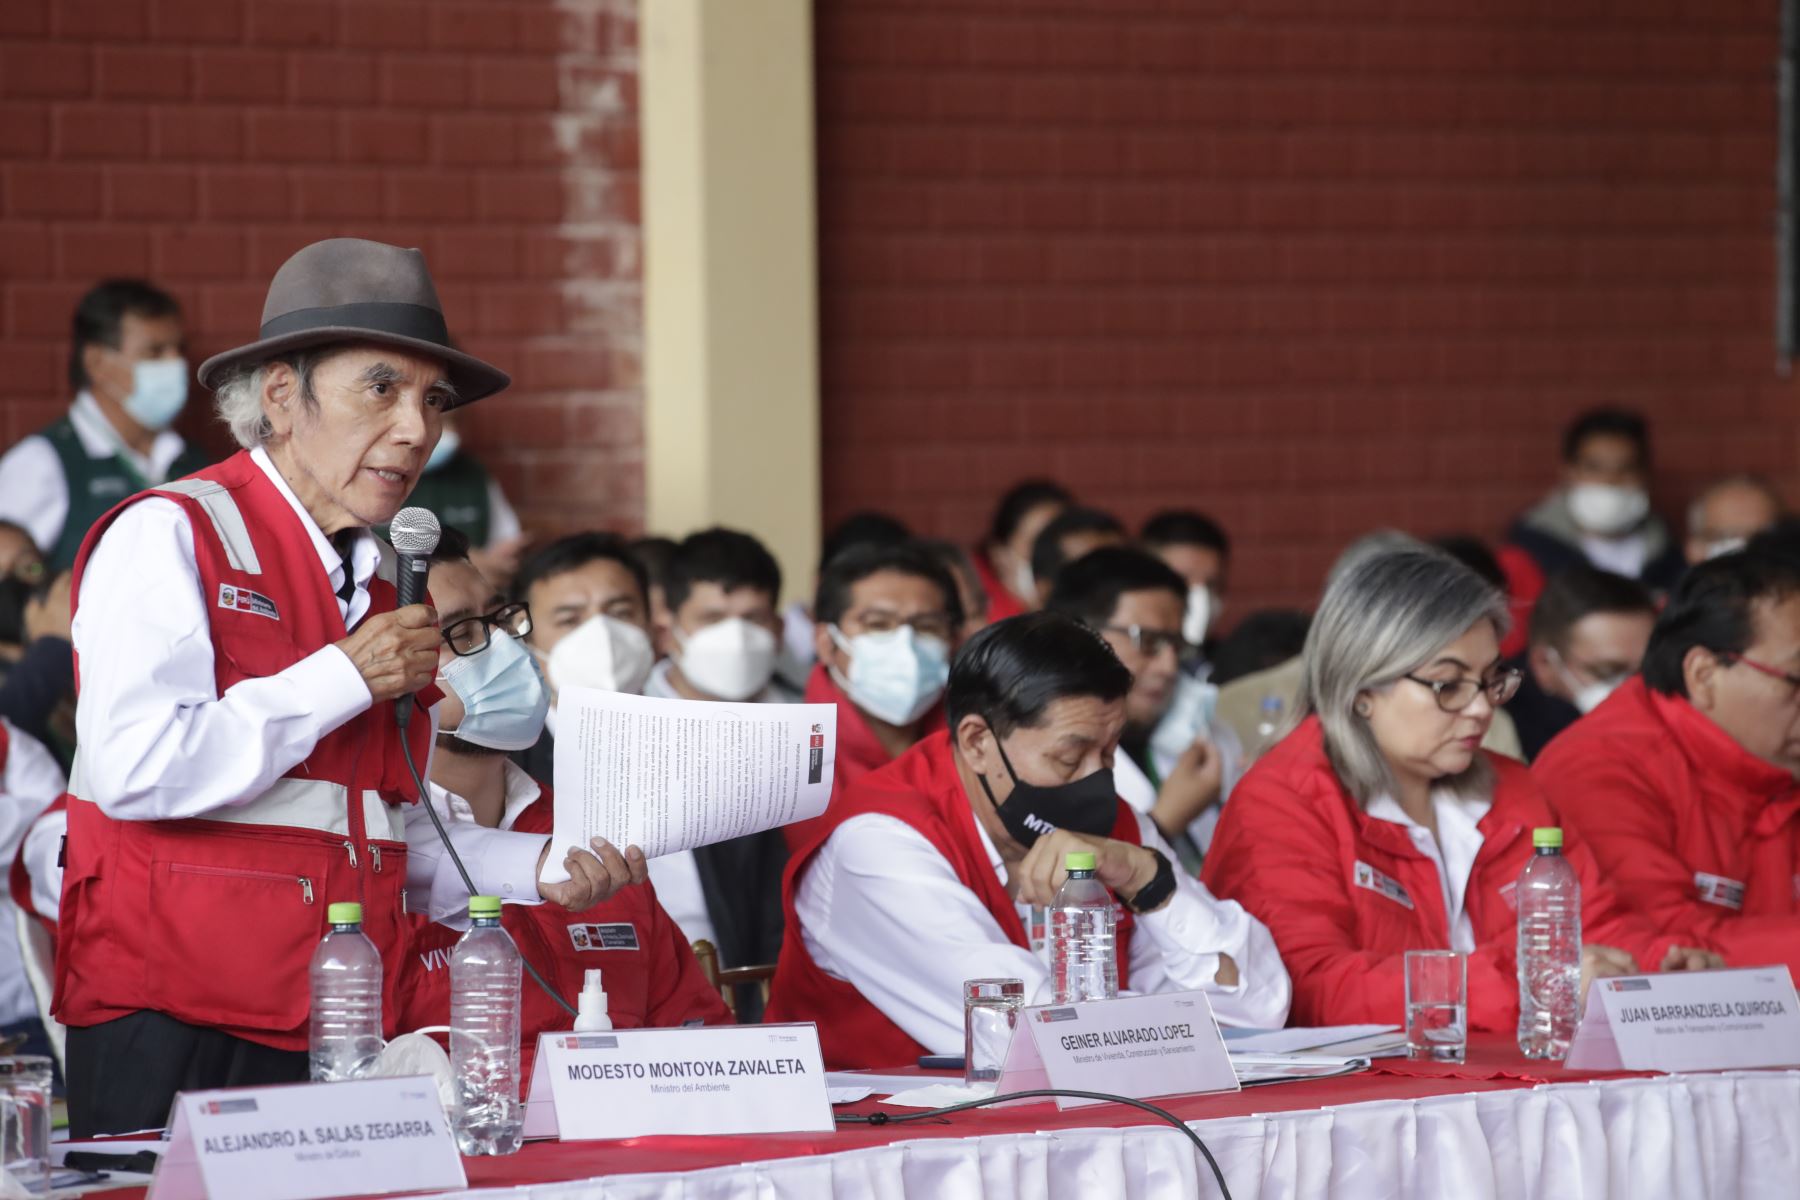 Ministro de Ambiente, Modesto Montoya, participó del XIII Consejo de Ministros Descentralizado en Amazonas.
Foto: ANDINA/ Presidencia Perú